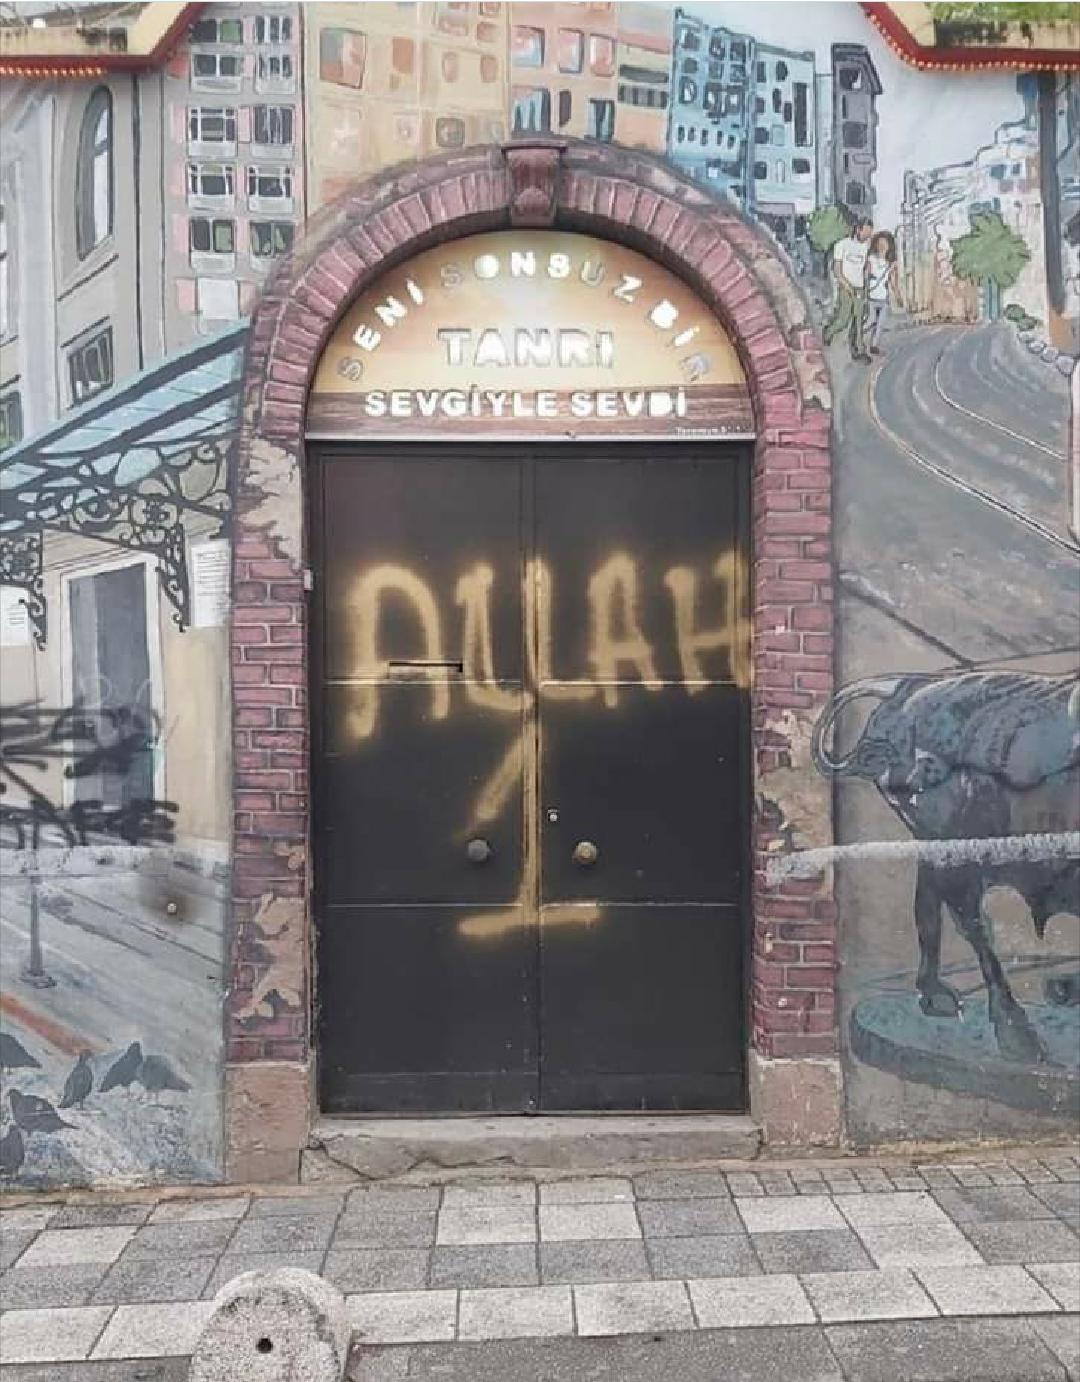 Kadıköy'de kilise kapısına "Allah 1" yazan kişi serbest bırakıldı